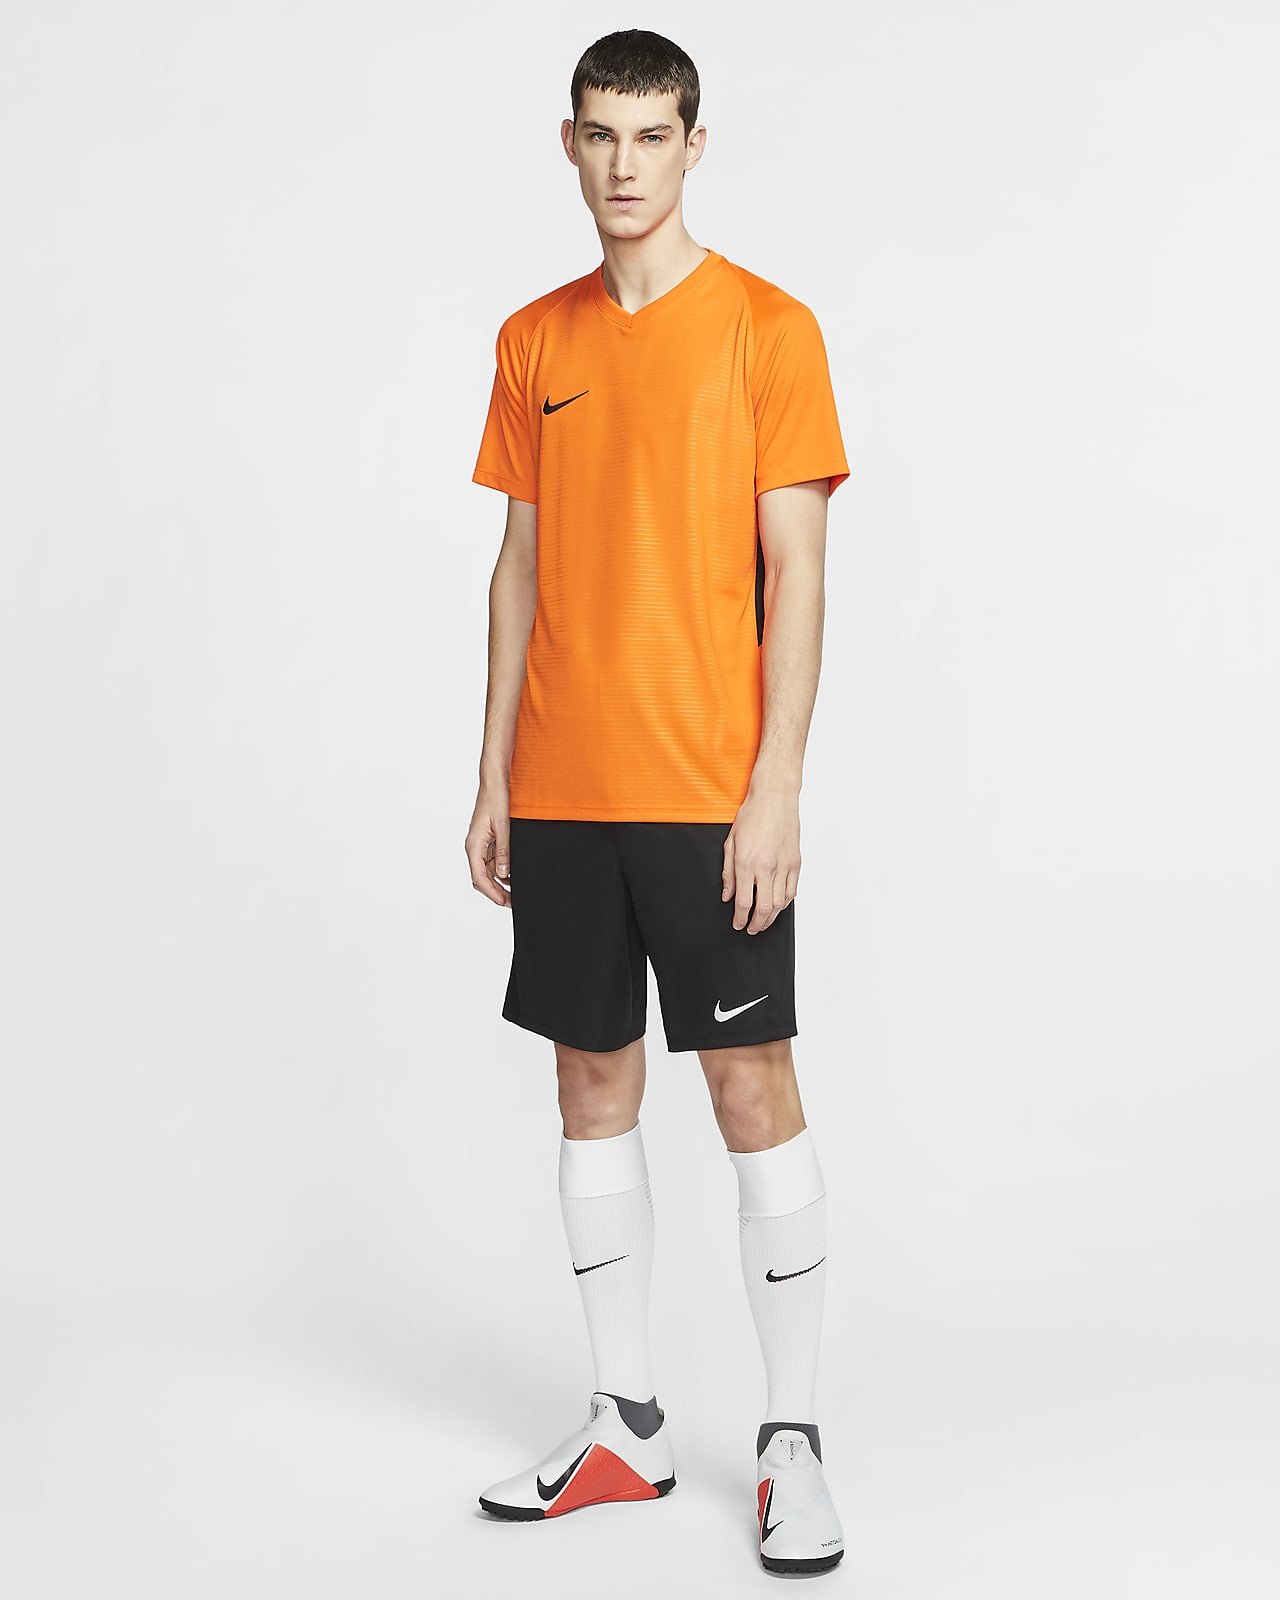 Nike公式 ナイキ Dri Fit パーク 3 メンズ ニット サッカーショートパンツ オンラインストア 通販サイト